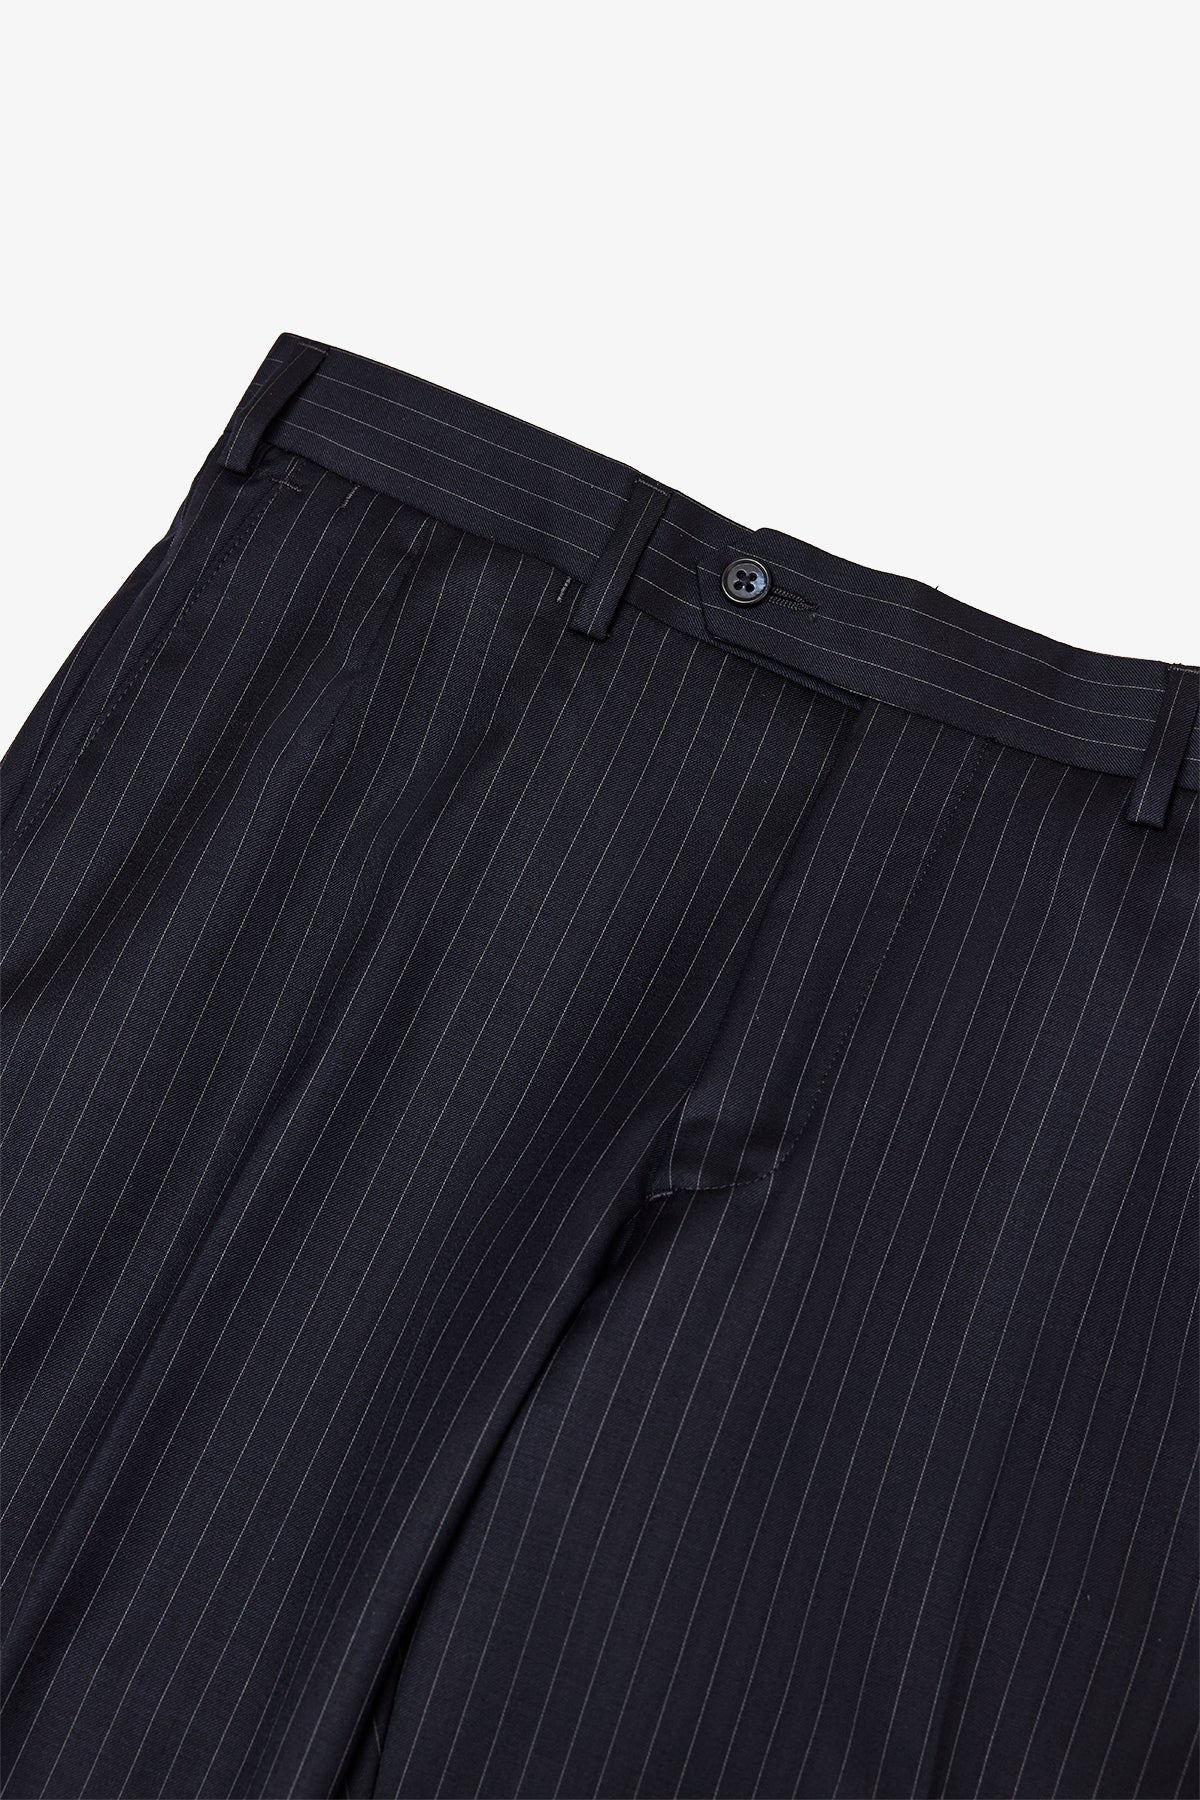 Tives - Navy stripe trouser